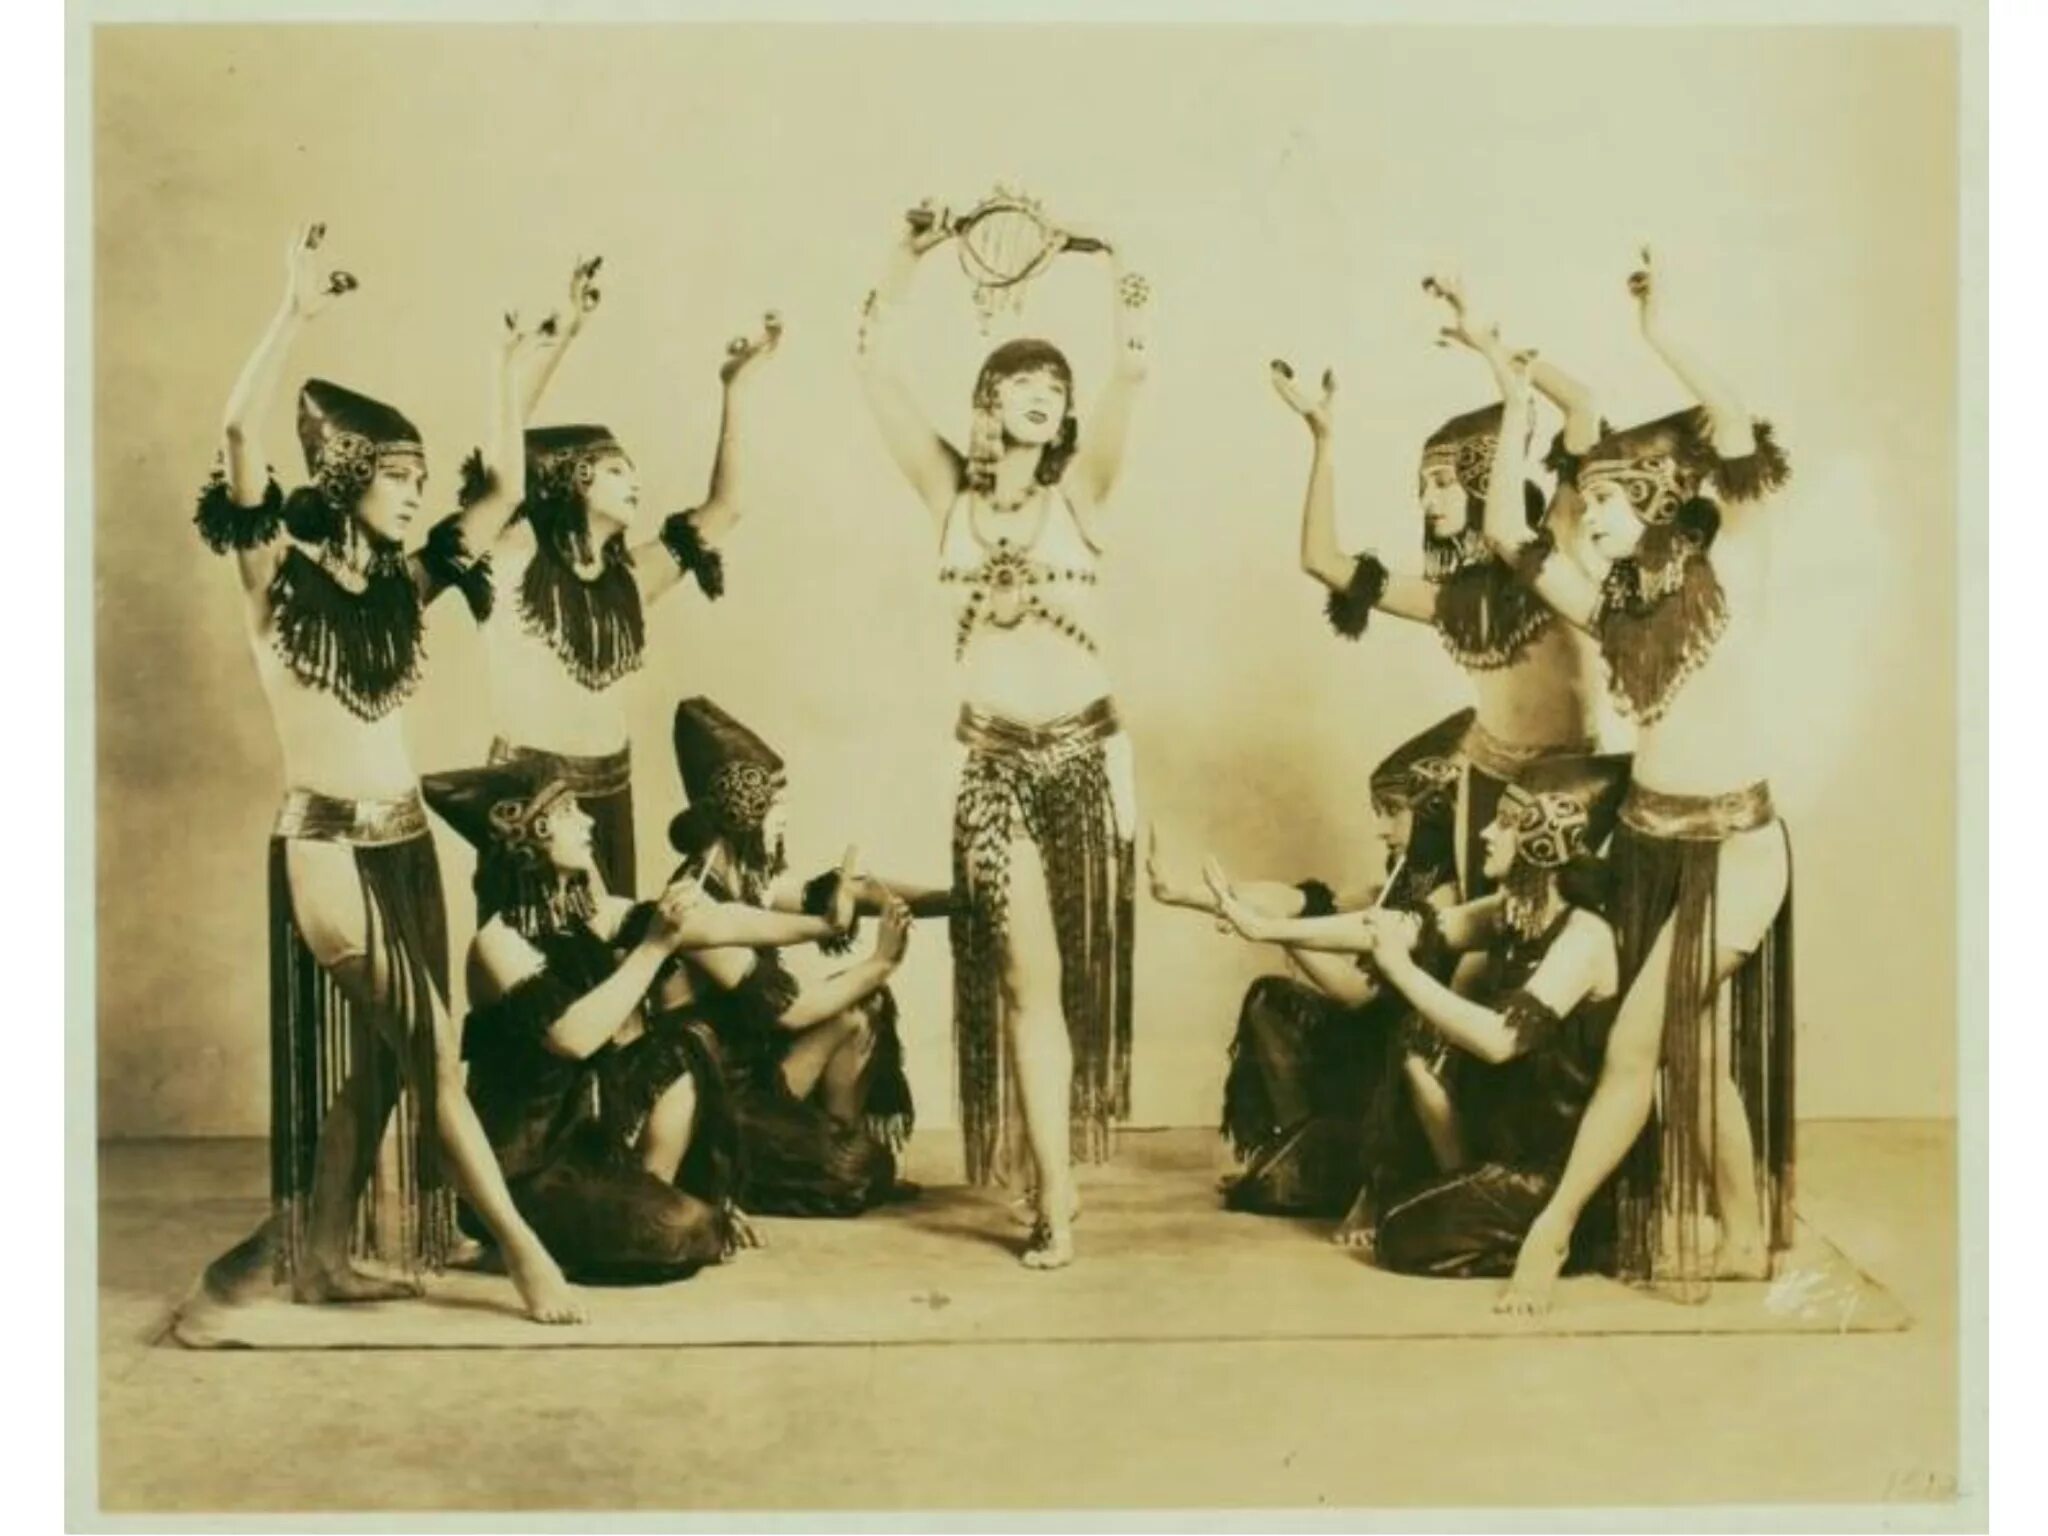 Модерн начало 20 века. Дорис Хамфри танец. Рут сен Дени и Тед Шоун. Танец Модерн начало 20 века.